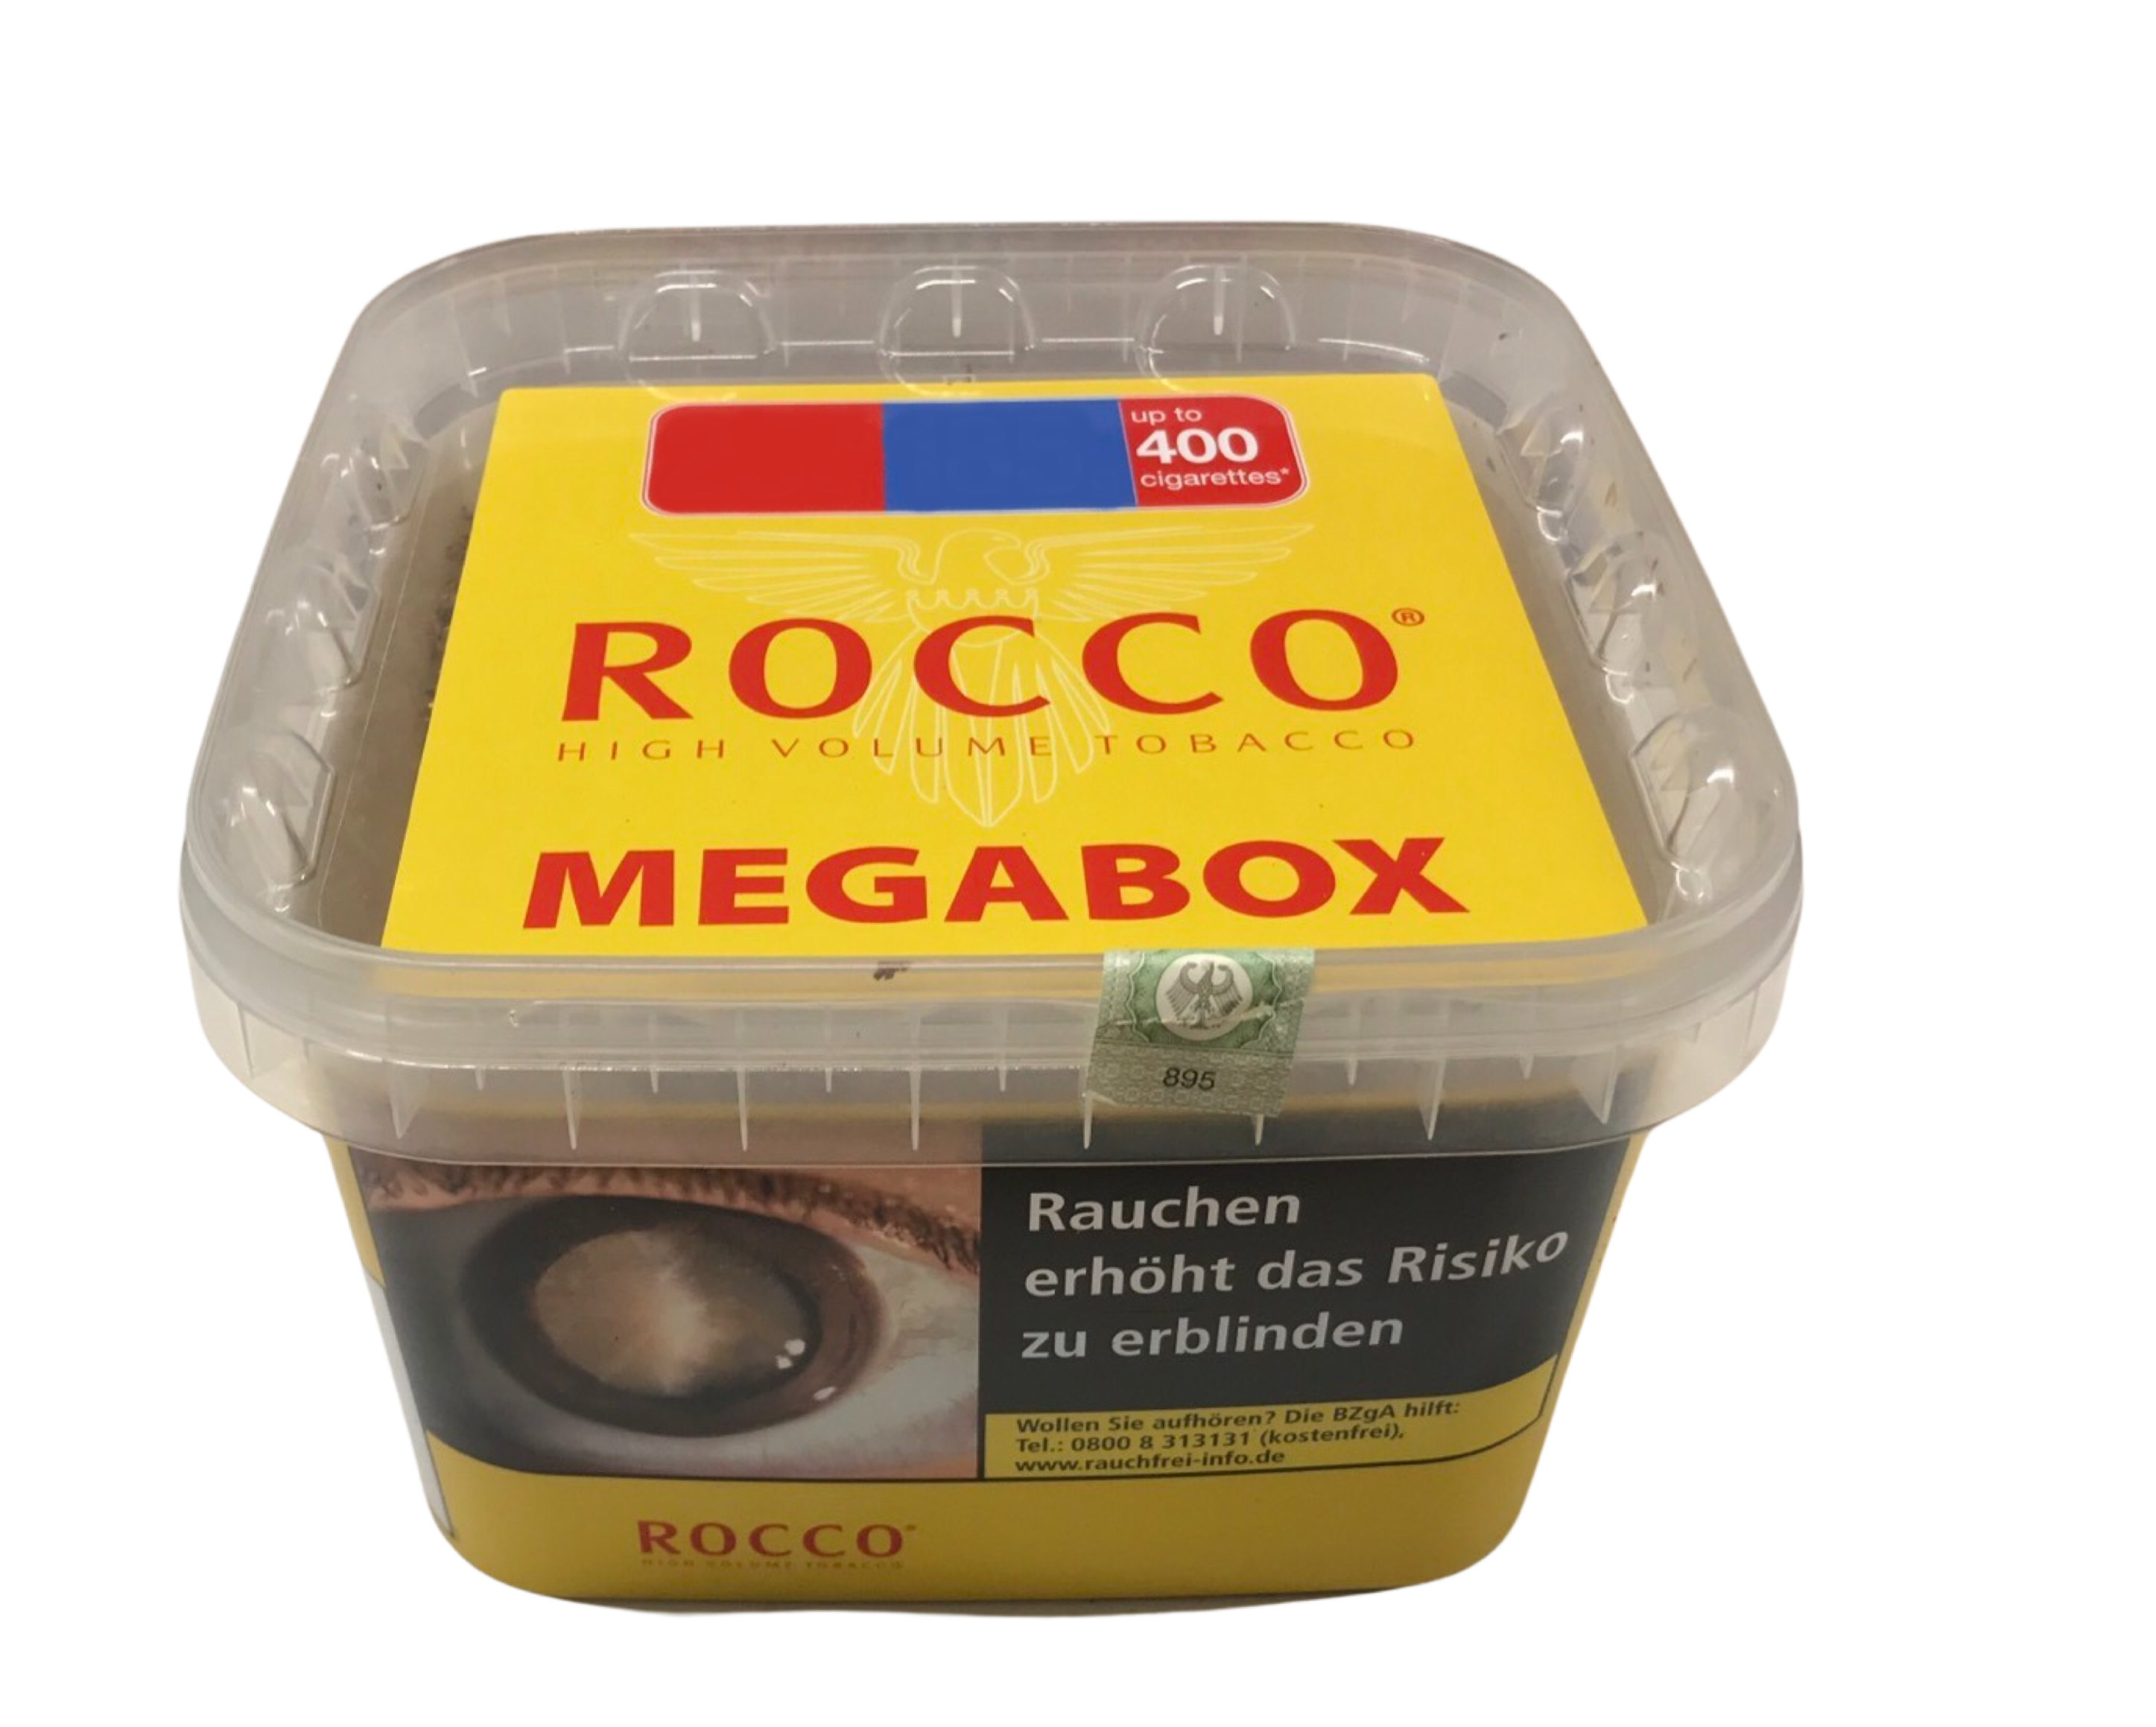 ROCCO High Volumen Tobacco Megabox